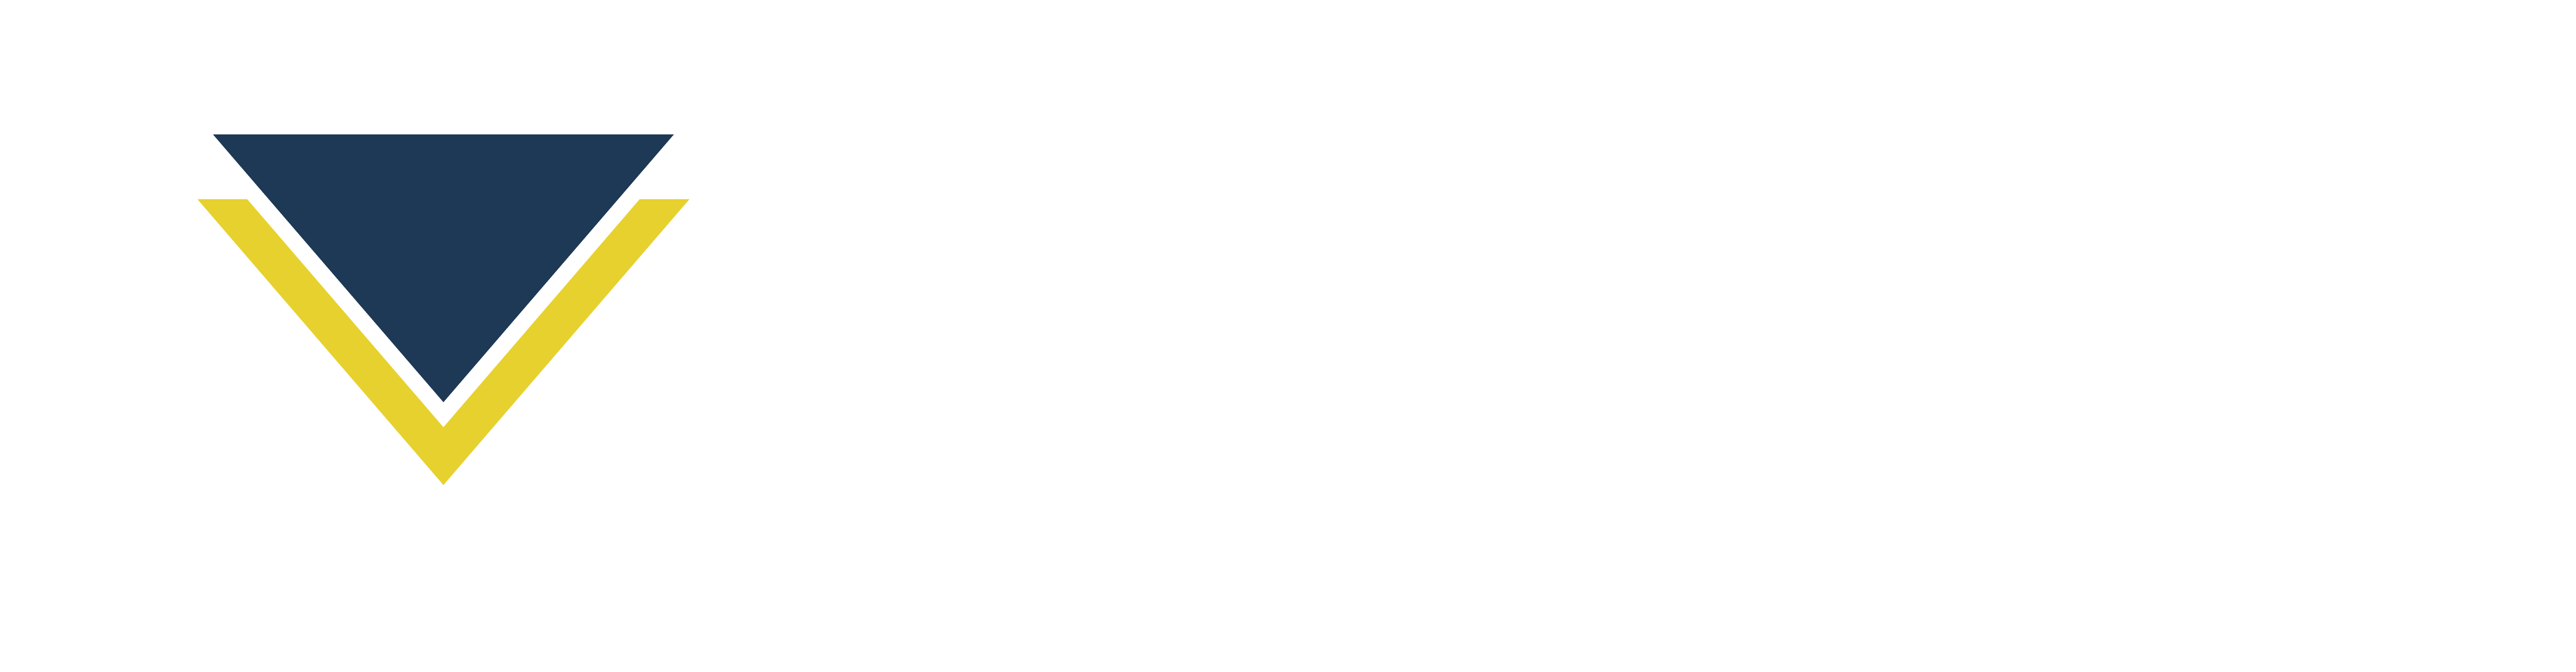 Heavy Mech Logo